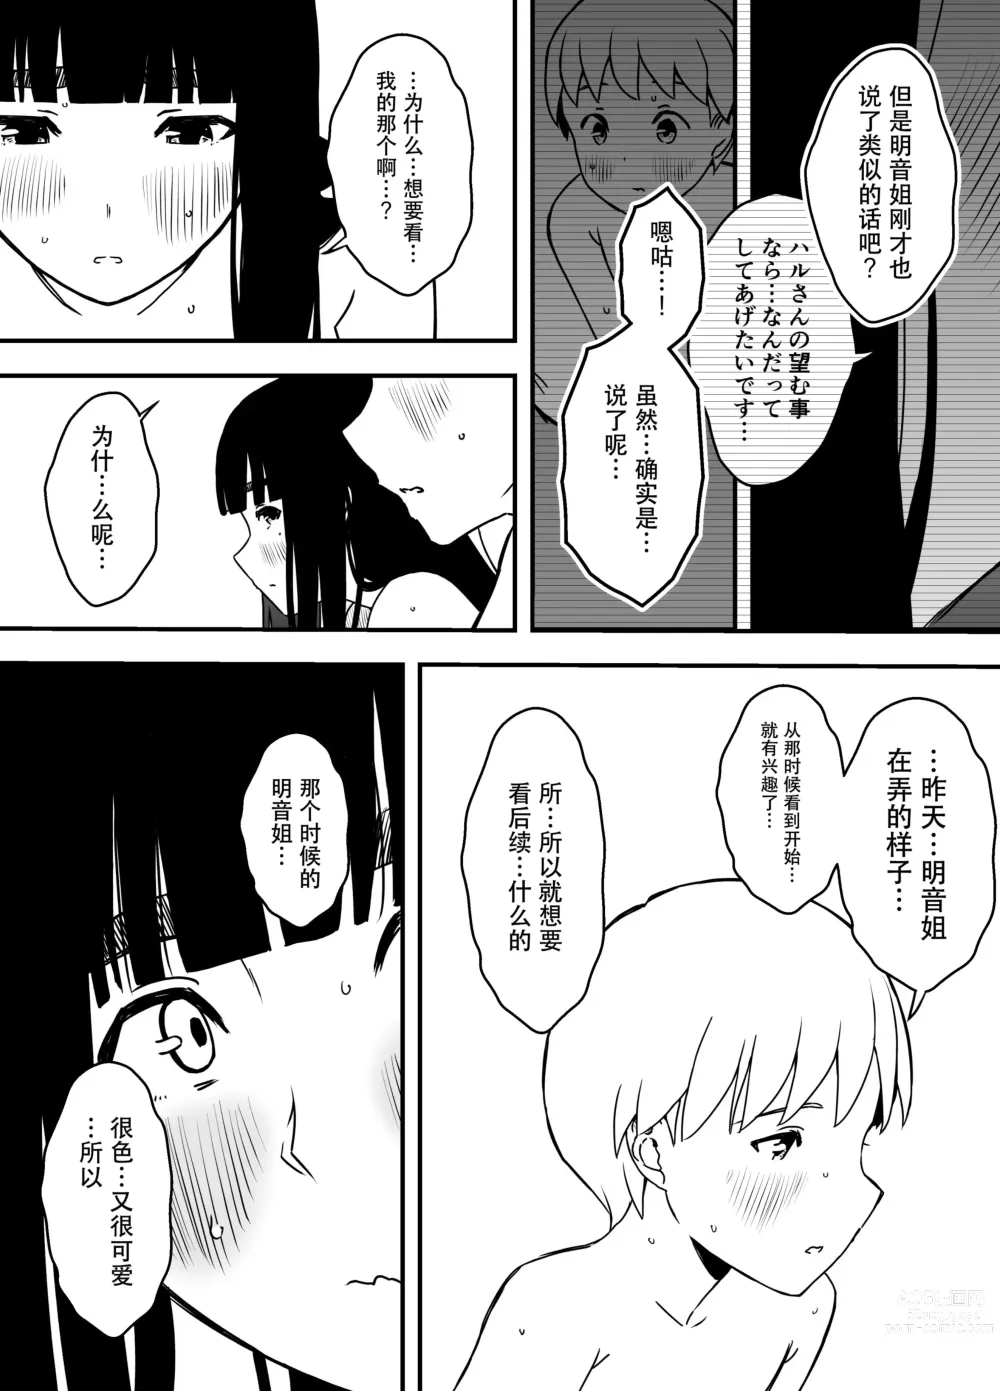 Page 6 of doujinshi Giri no Ane to no 7-kakan Seikatsu - 5